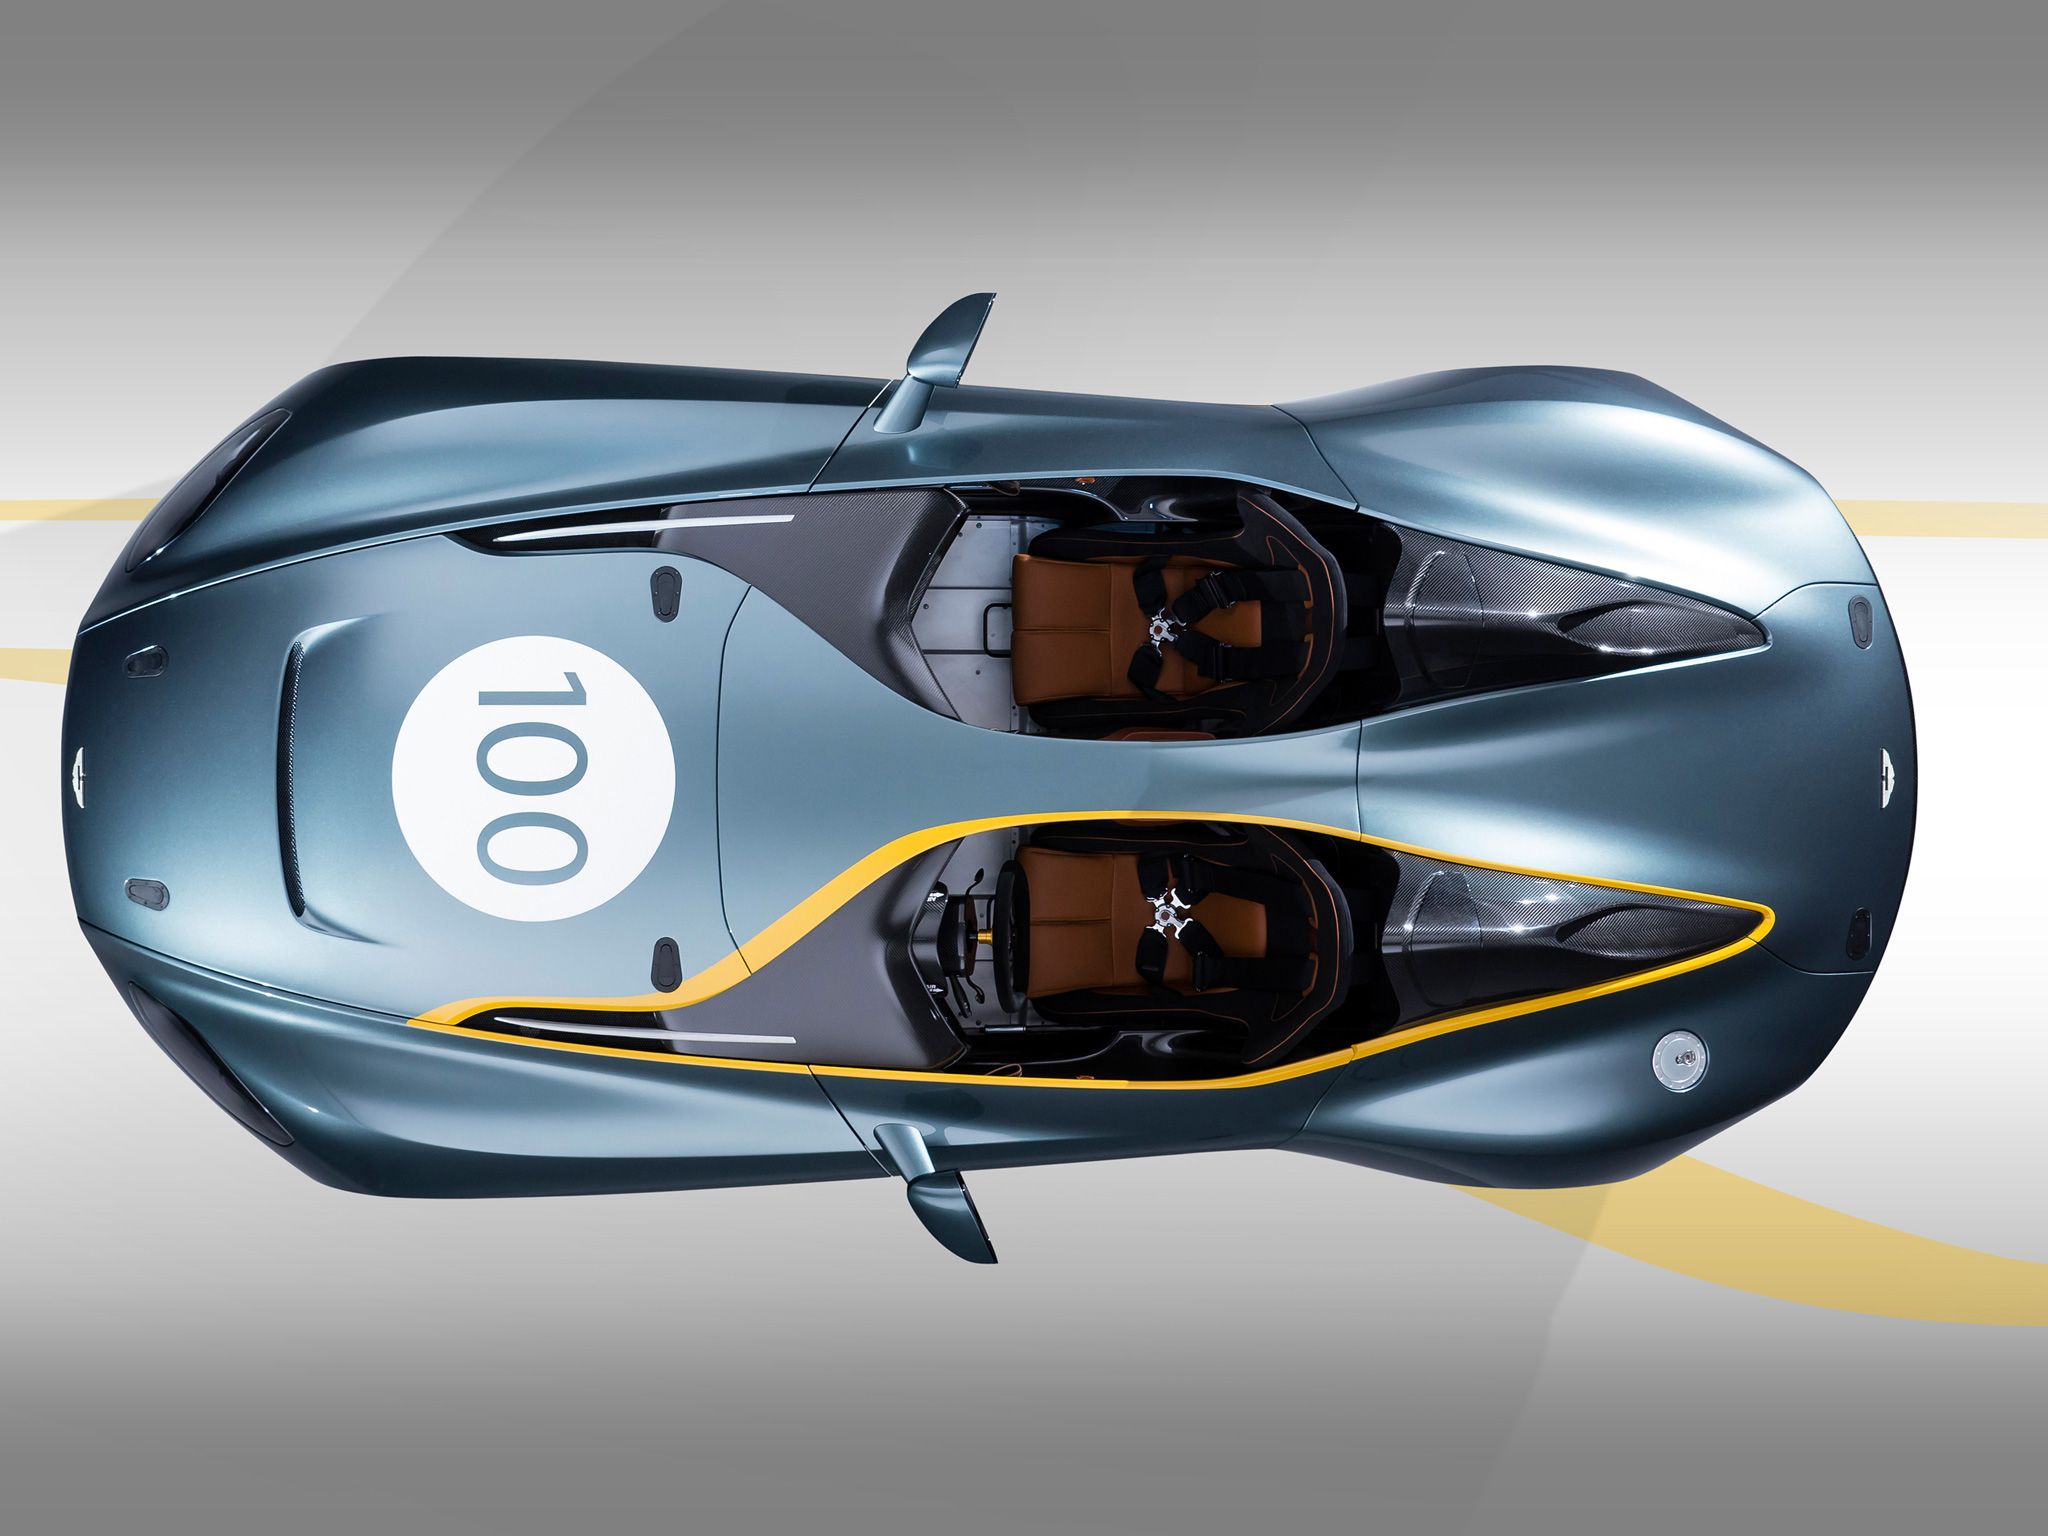 Aston Martin CC100 Speedster Concept. Aston martin, Super cars, Aston